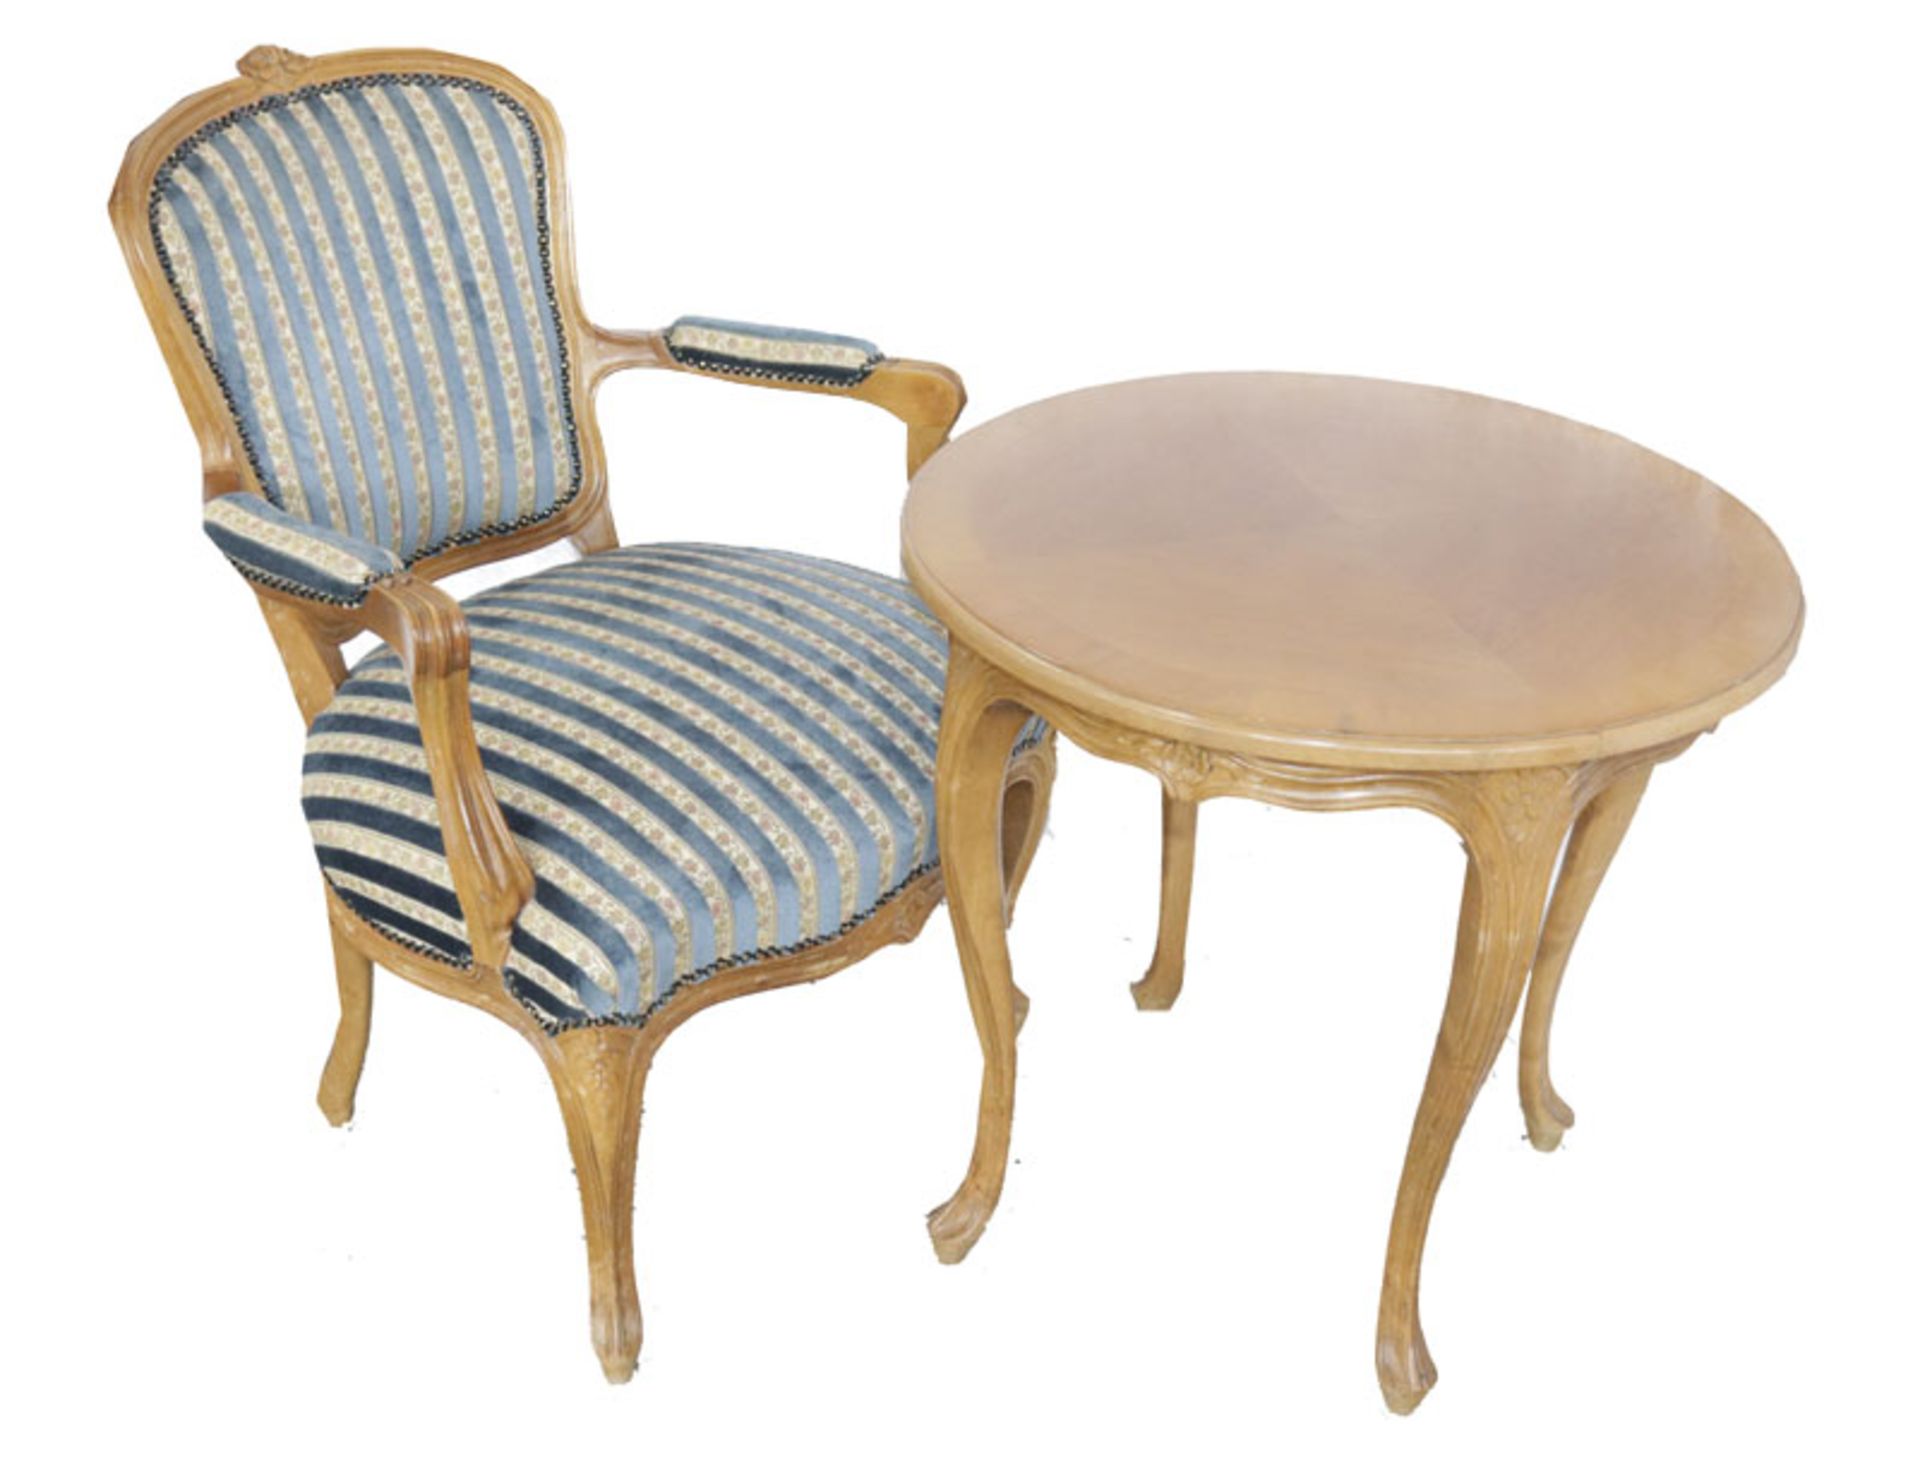 Runder Tisch auf geschwungenen Beinen, teils beschnitzt, H 60 cm, D 62 cm, und Holz Armlehnstuhl auf